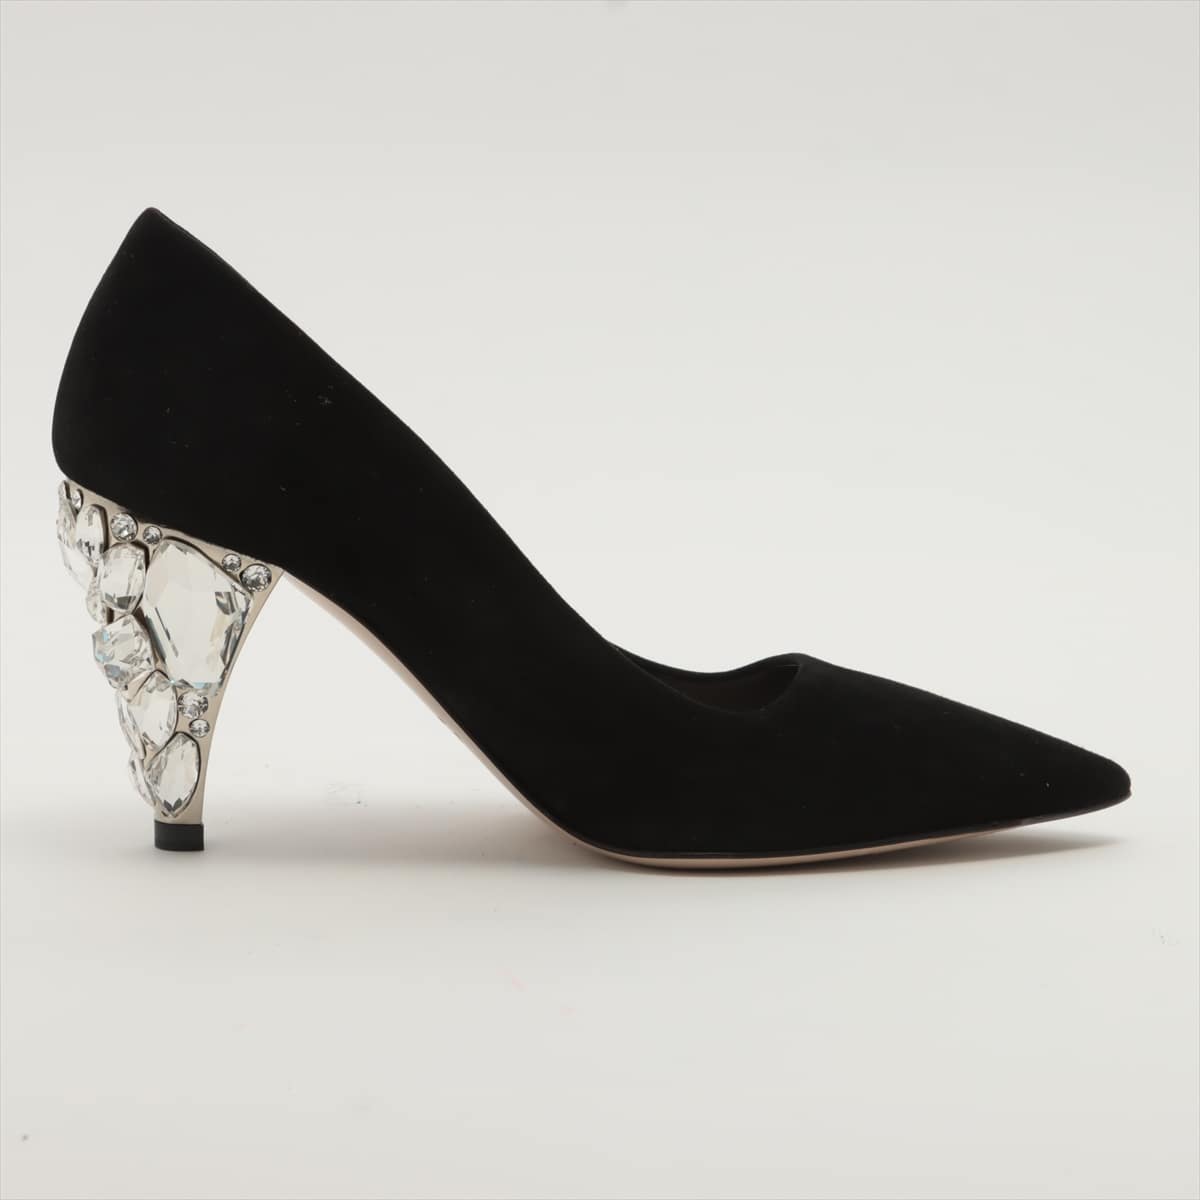 Miu Miu Suede Pumps 35 Ladies' Black crystal heels Bijou